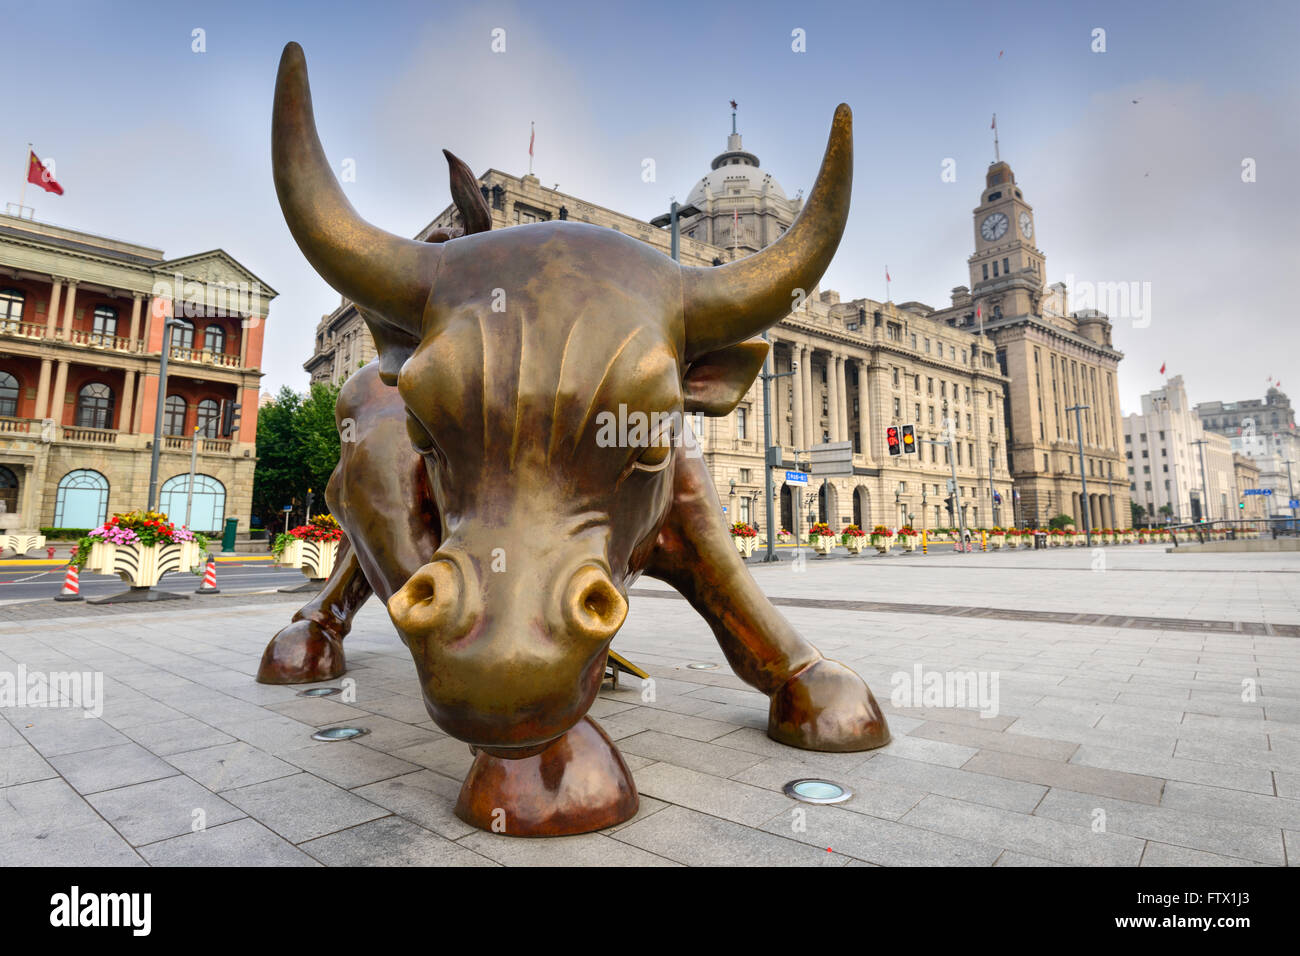 SHANGHAI, China - Junio 19, 2014: El Bund Bull escultura en la mañana. La obra fue estrenada en 2010. Foto de stock